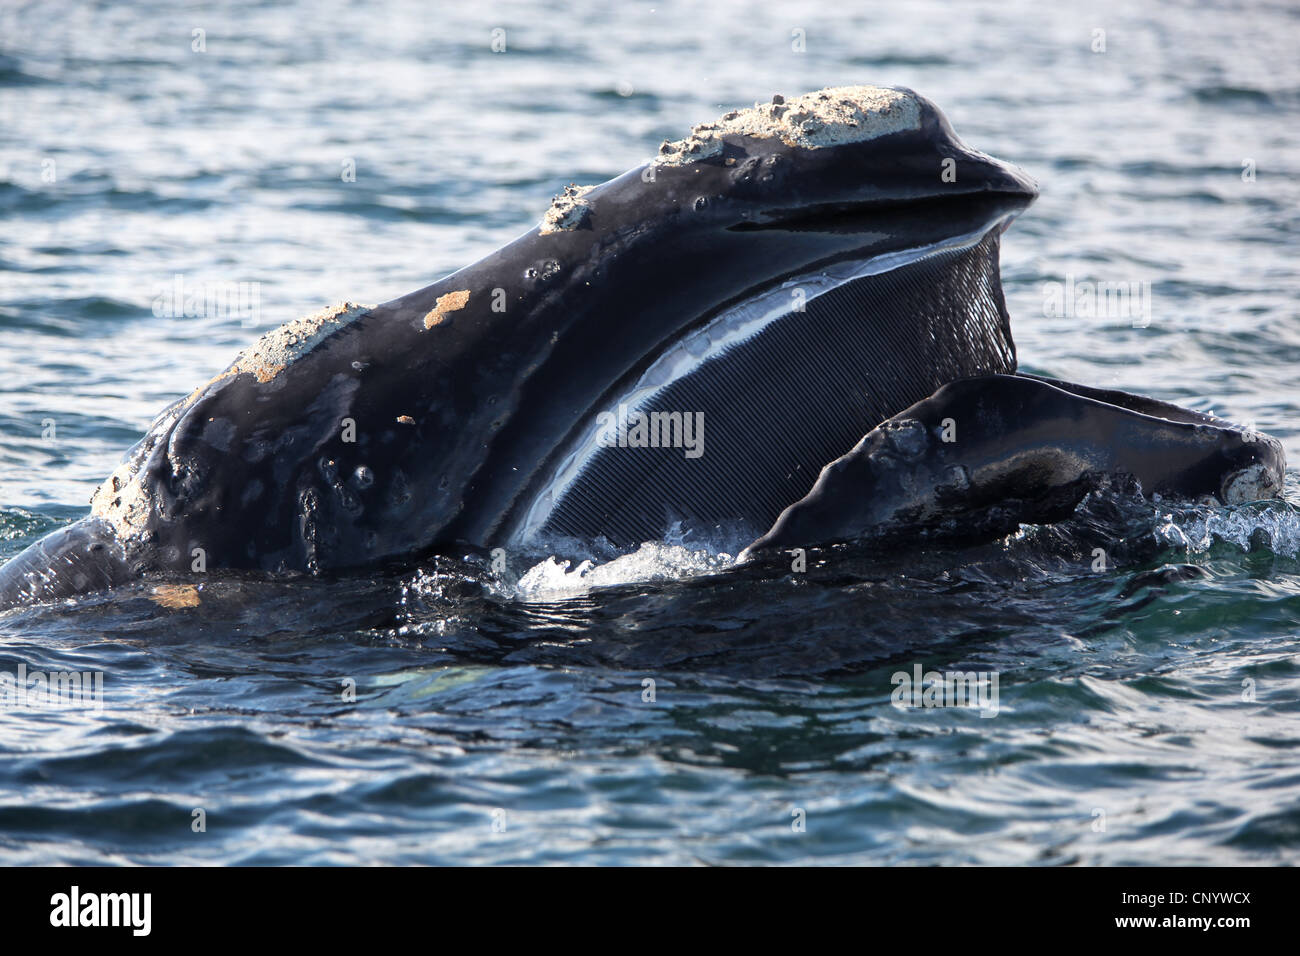 southern right whale (Eubalaena australis, Balaena glacialis australis), in Atlantik sea with open mouth, Argentina, Peninsula Valdes Stock Photo